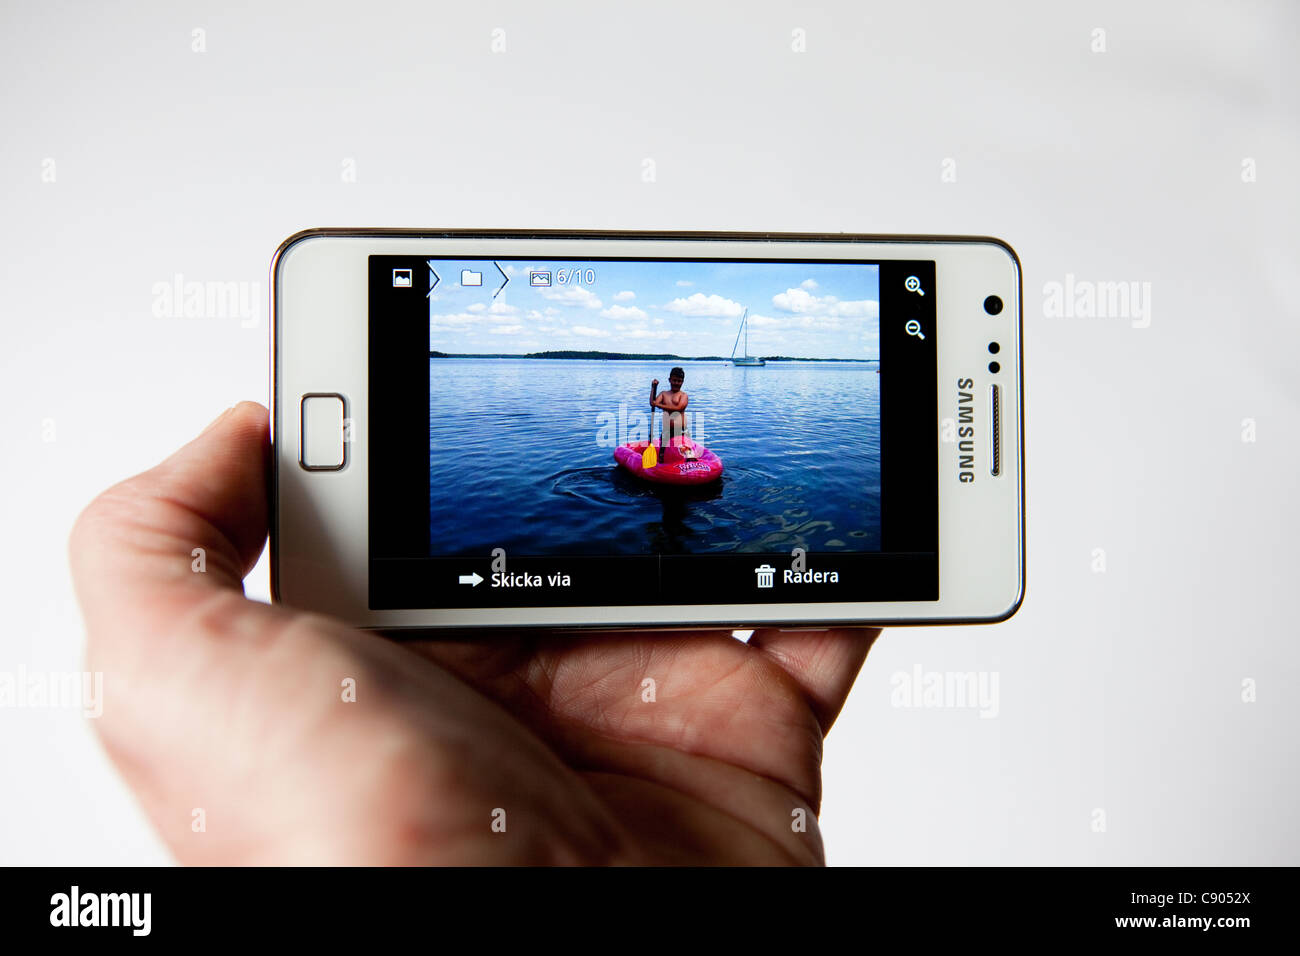 Visualización de imágenes en su Samsung Galaxy S II I9100 Smartphone Foto de stock